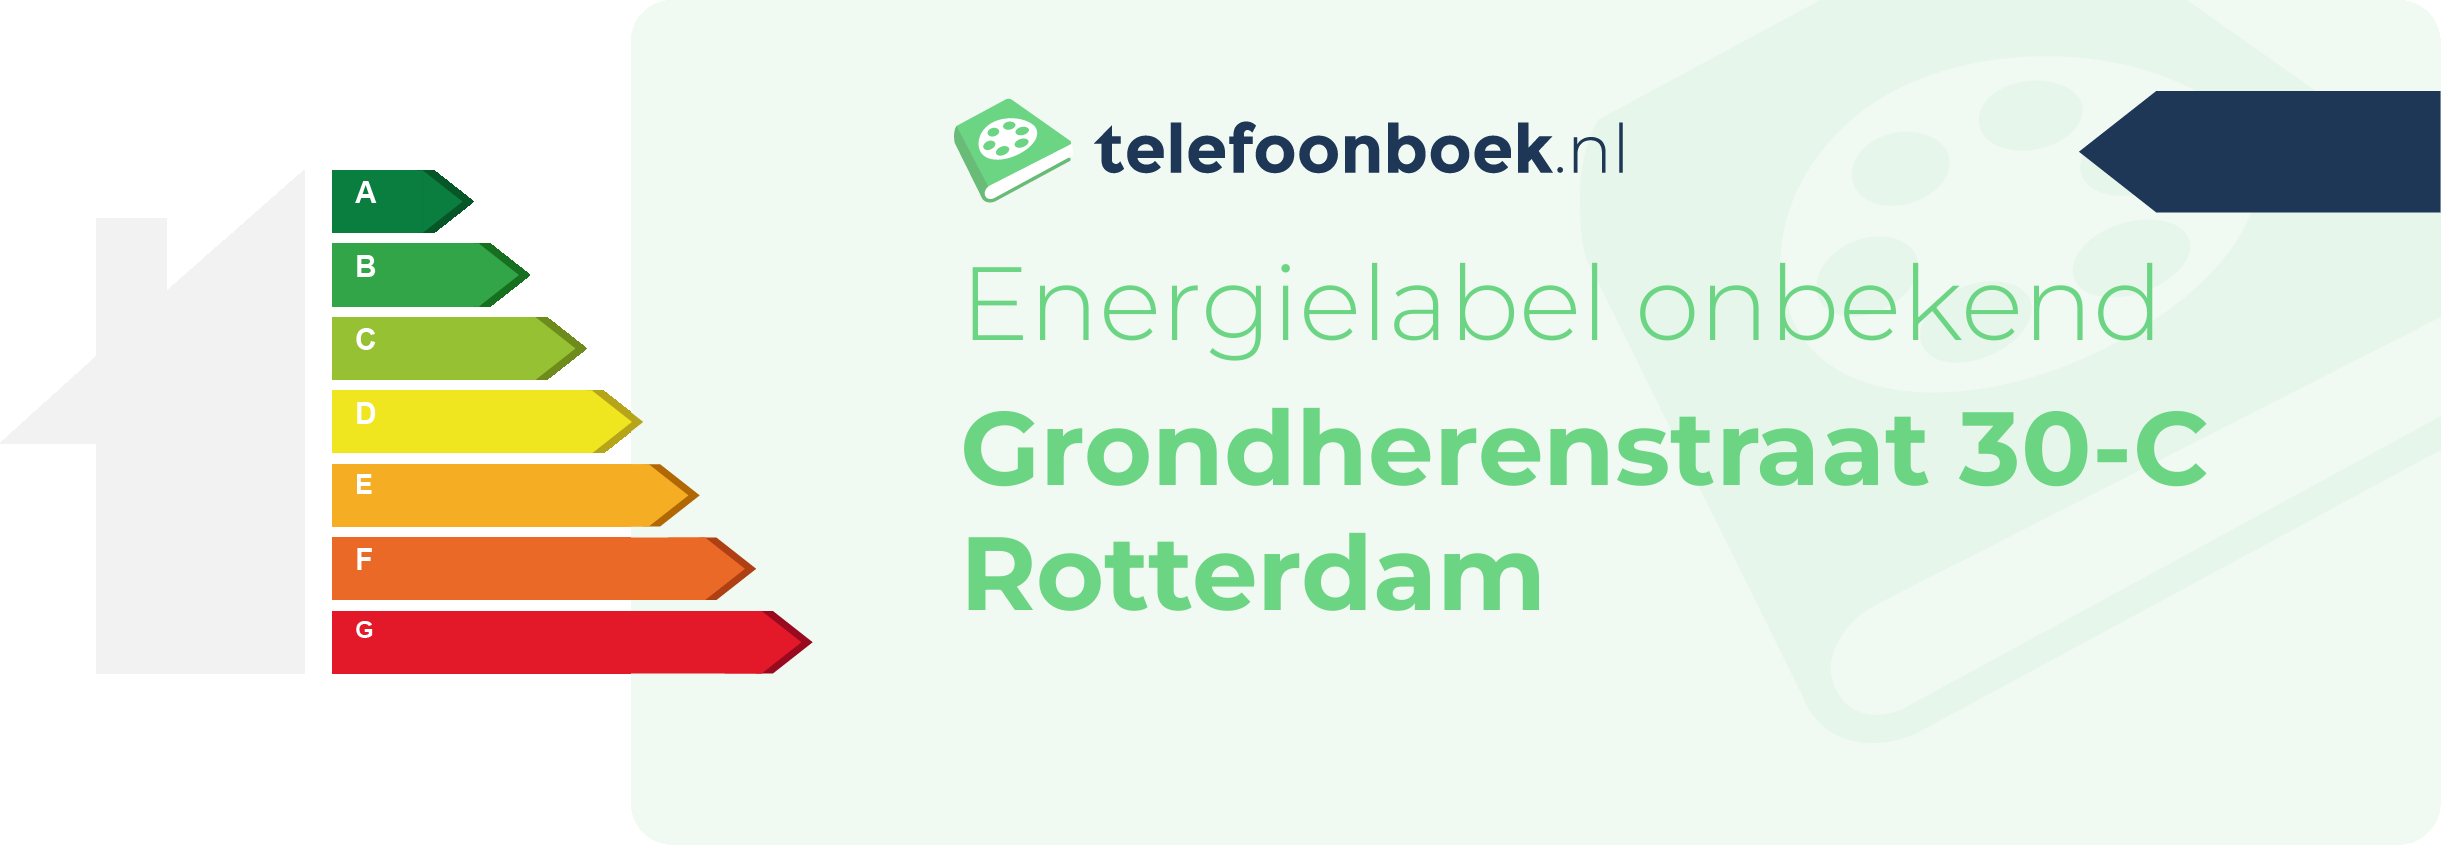 Energielabel Grondherenstraat 30-C Rotterdam